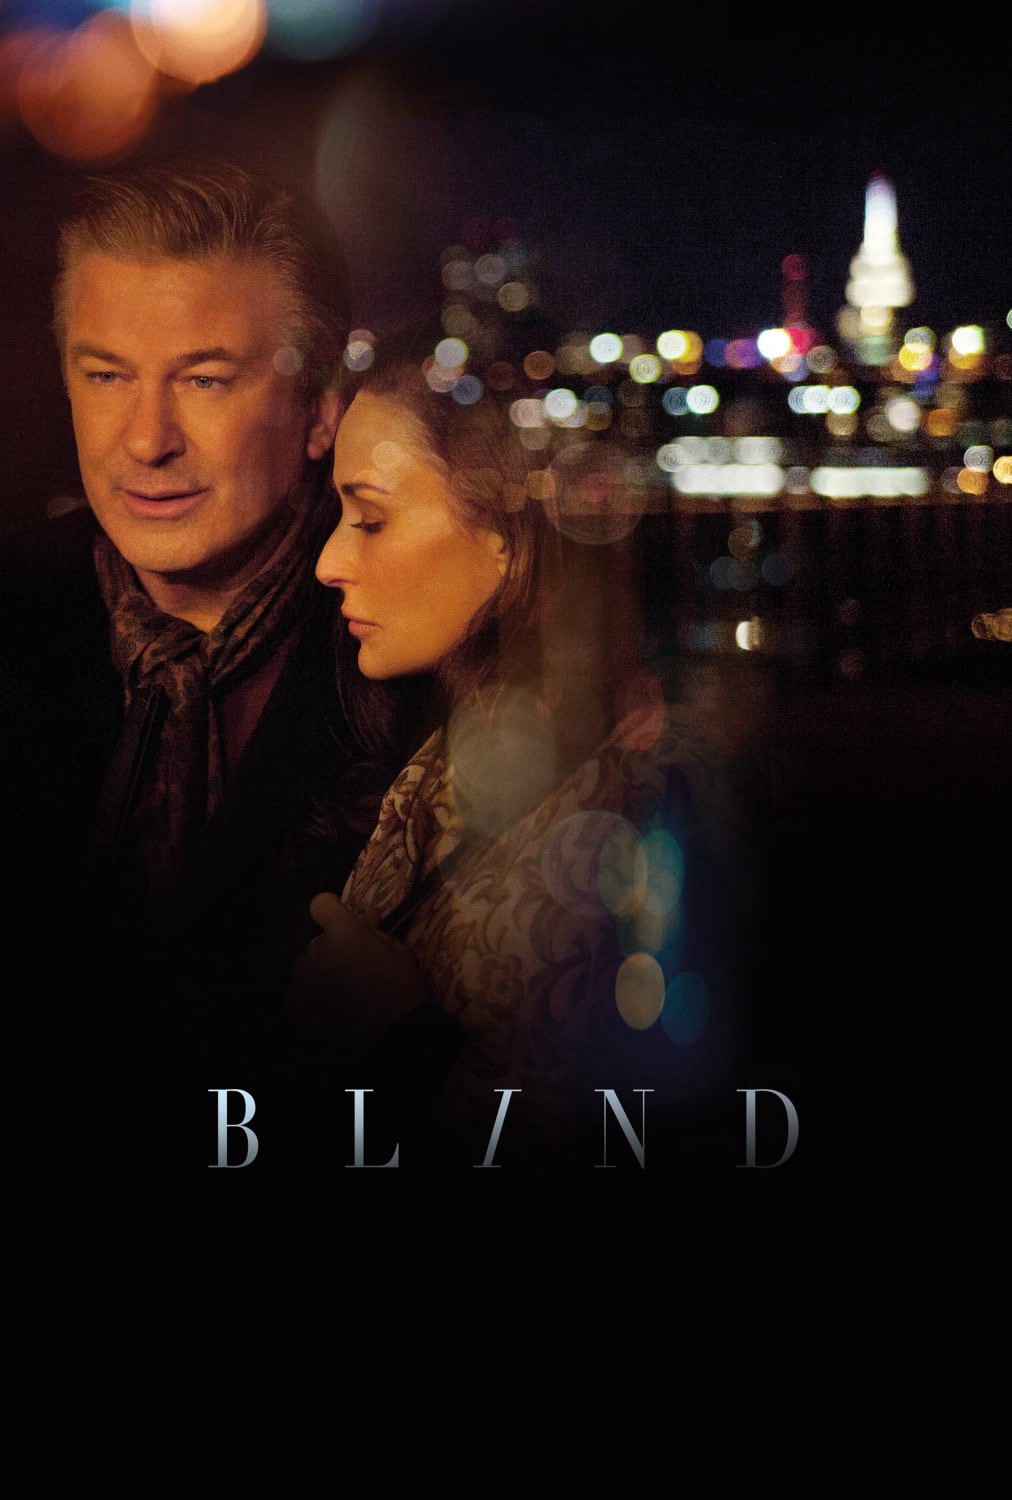 Blindd - Blindd (2017)